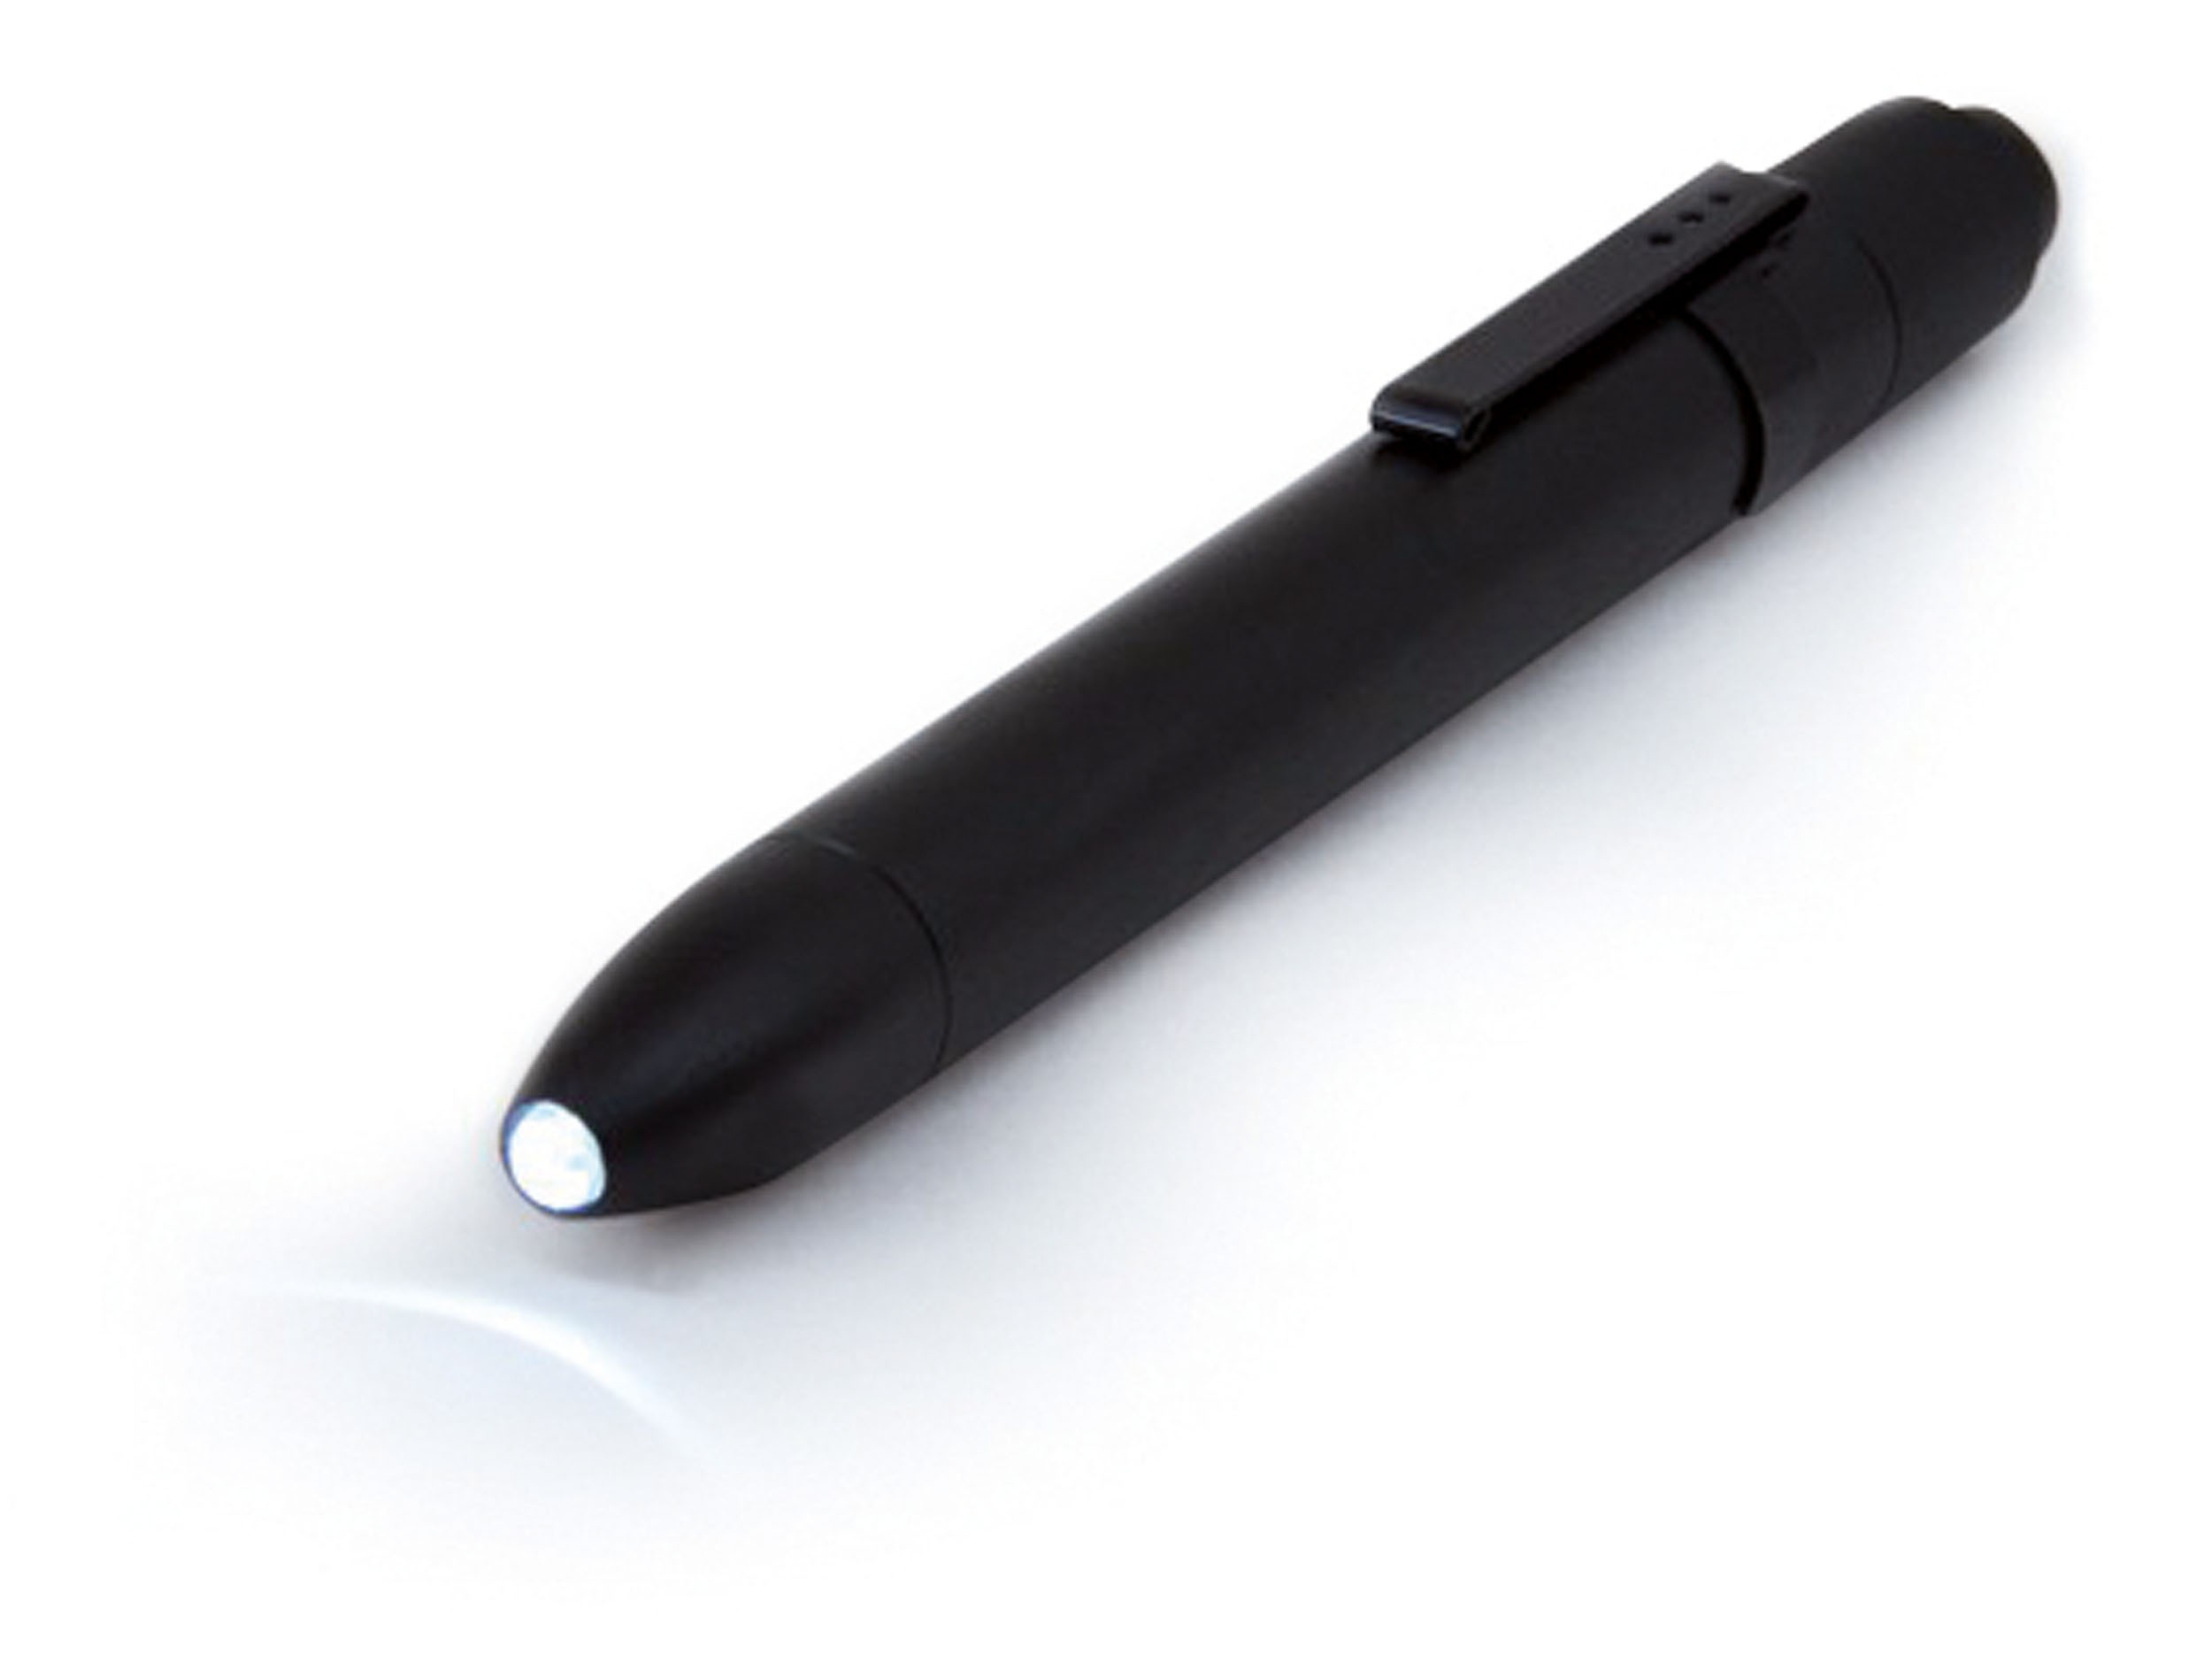 Weltool M6-Dr Lampe stylo, lampe de poche avec clip, lampe-stylo portable  LED blanc chaud, faisceau uniforme, sans éblouissement, pour inspection